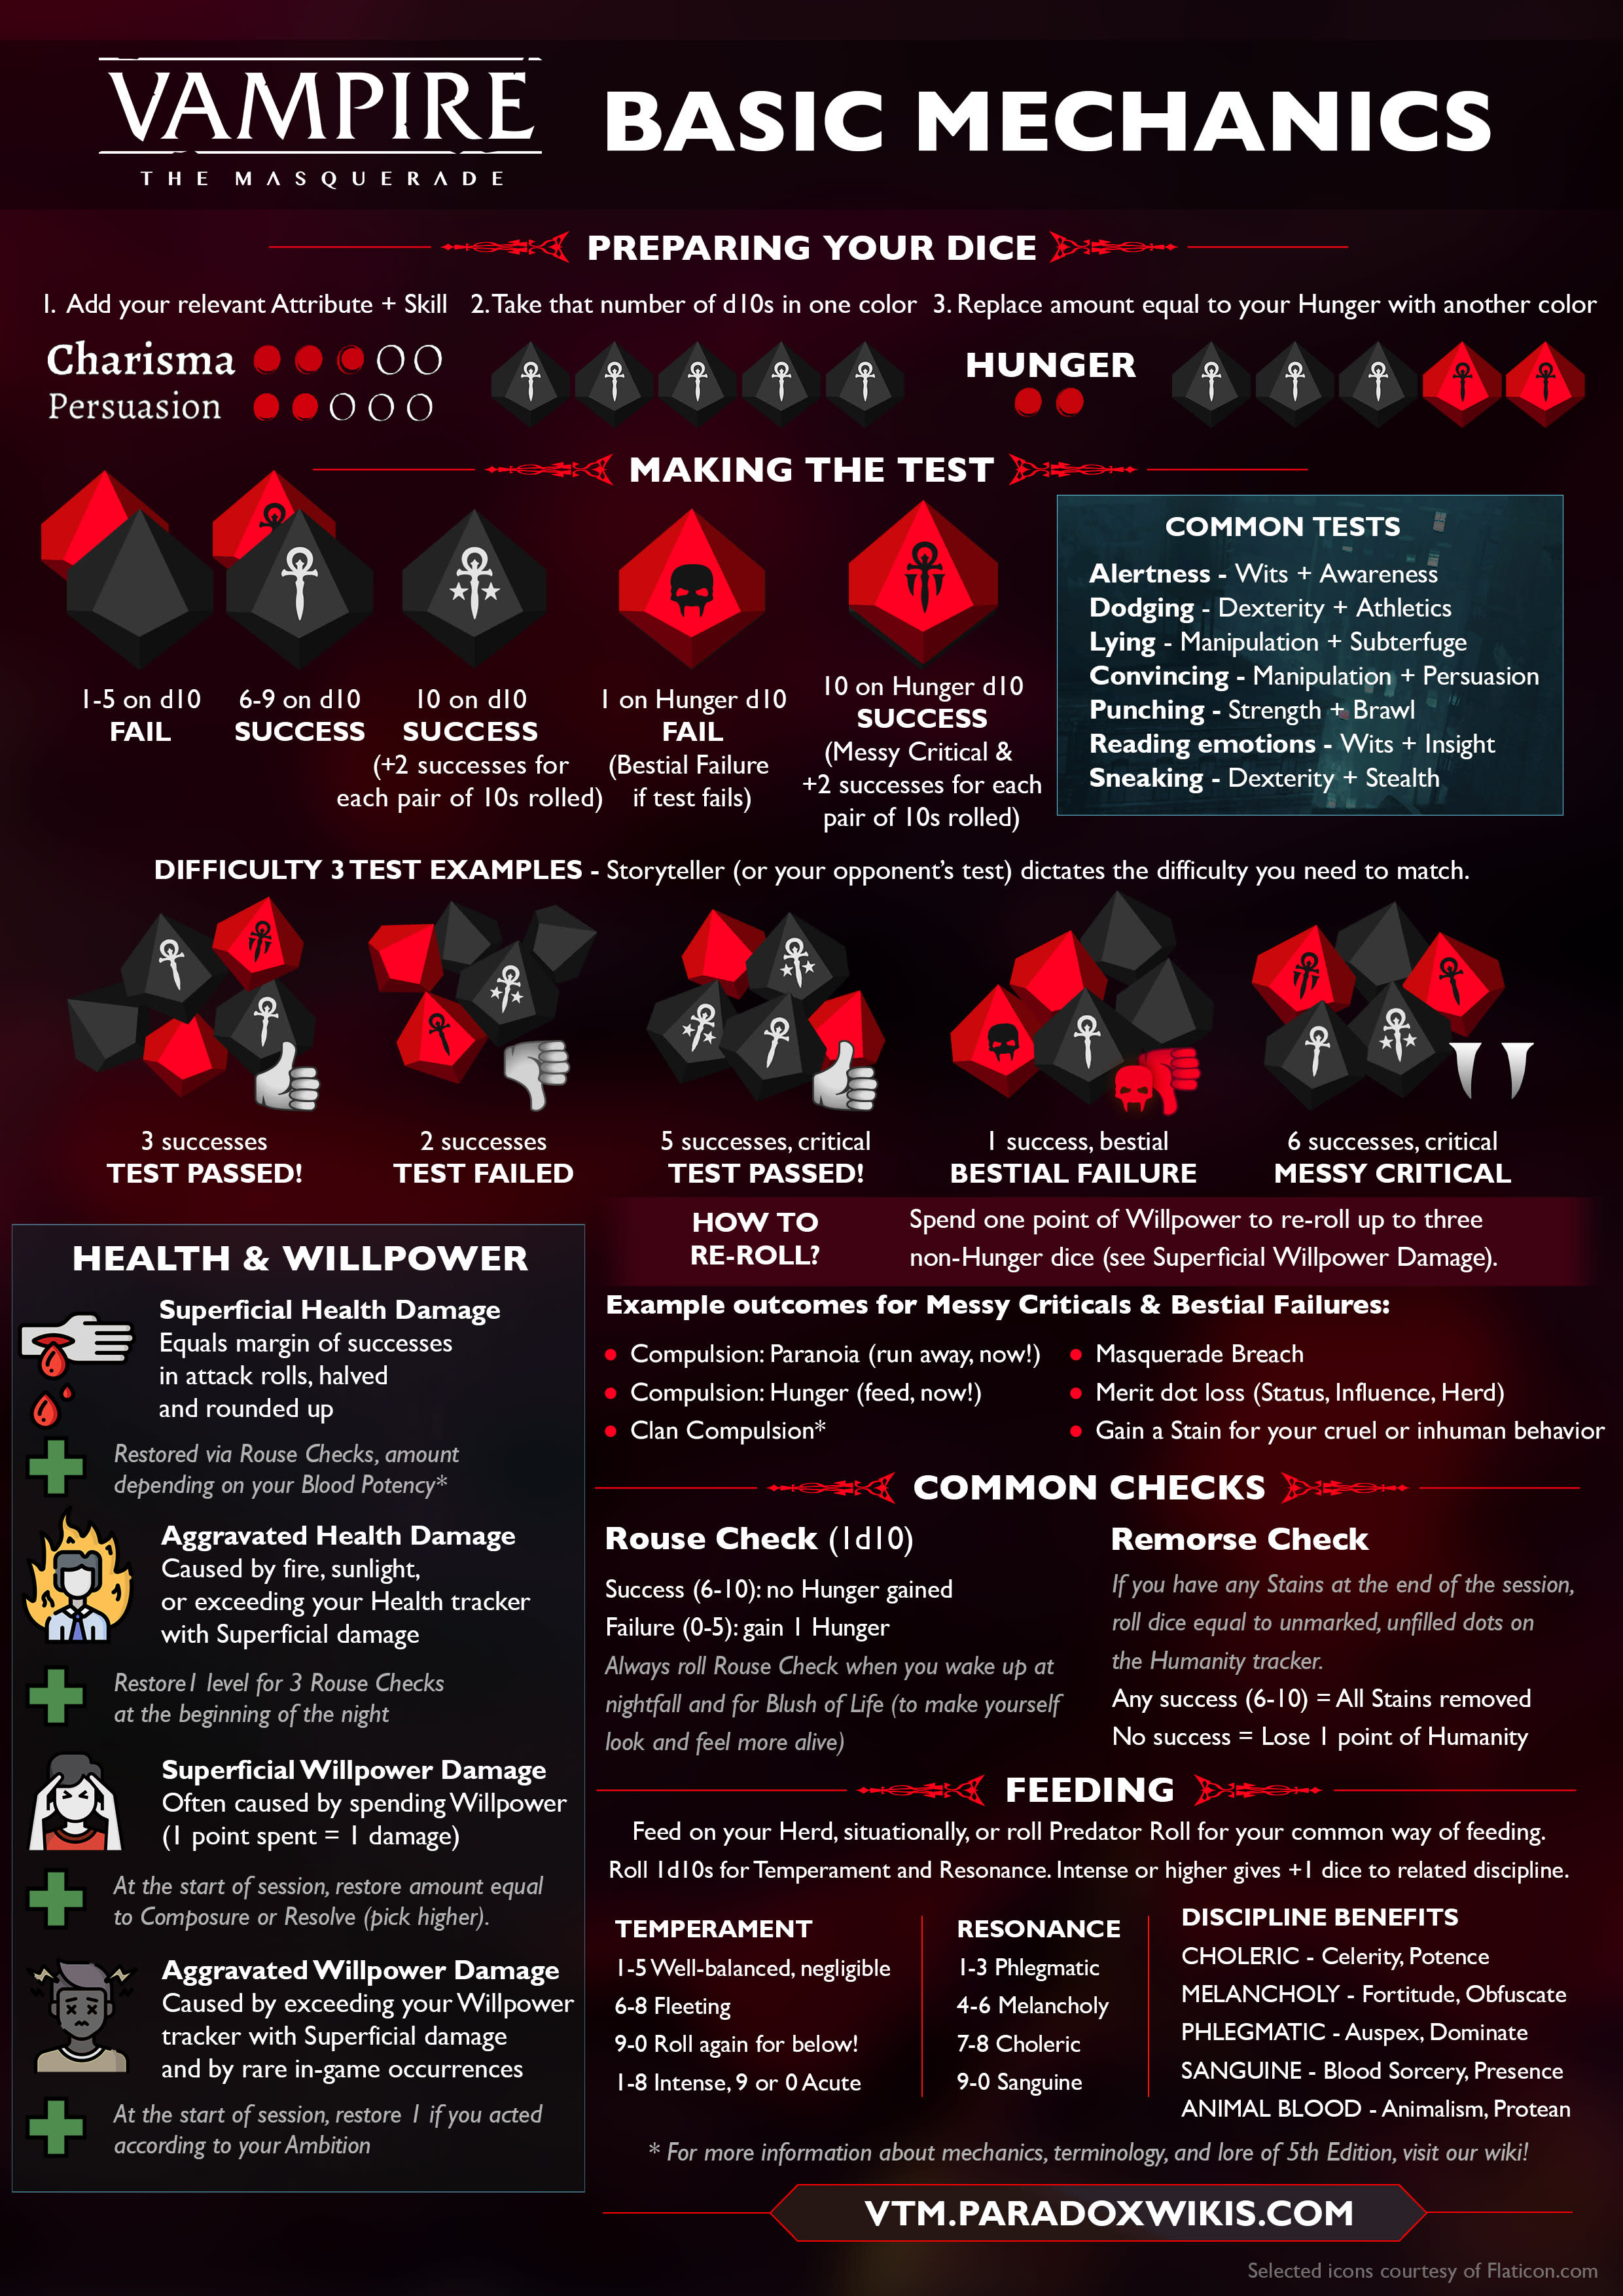 World of Darkness - Vampire: The Masquerade Basic Mechanics Infographic